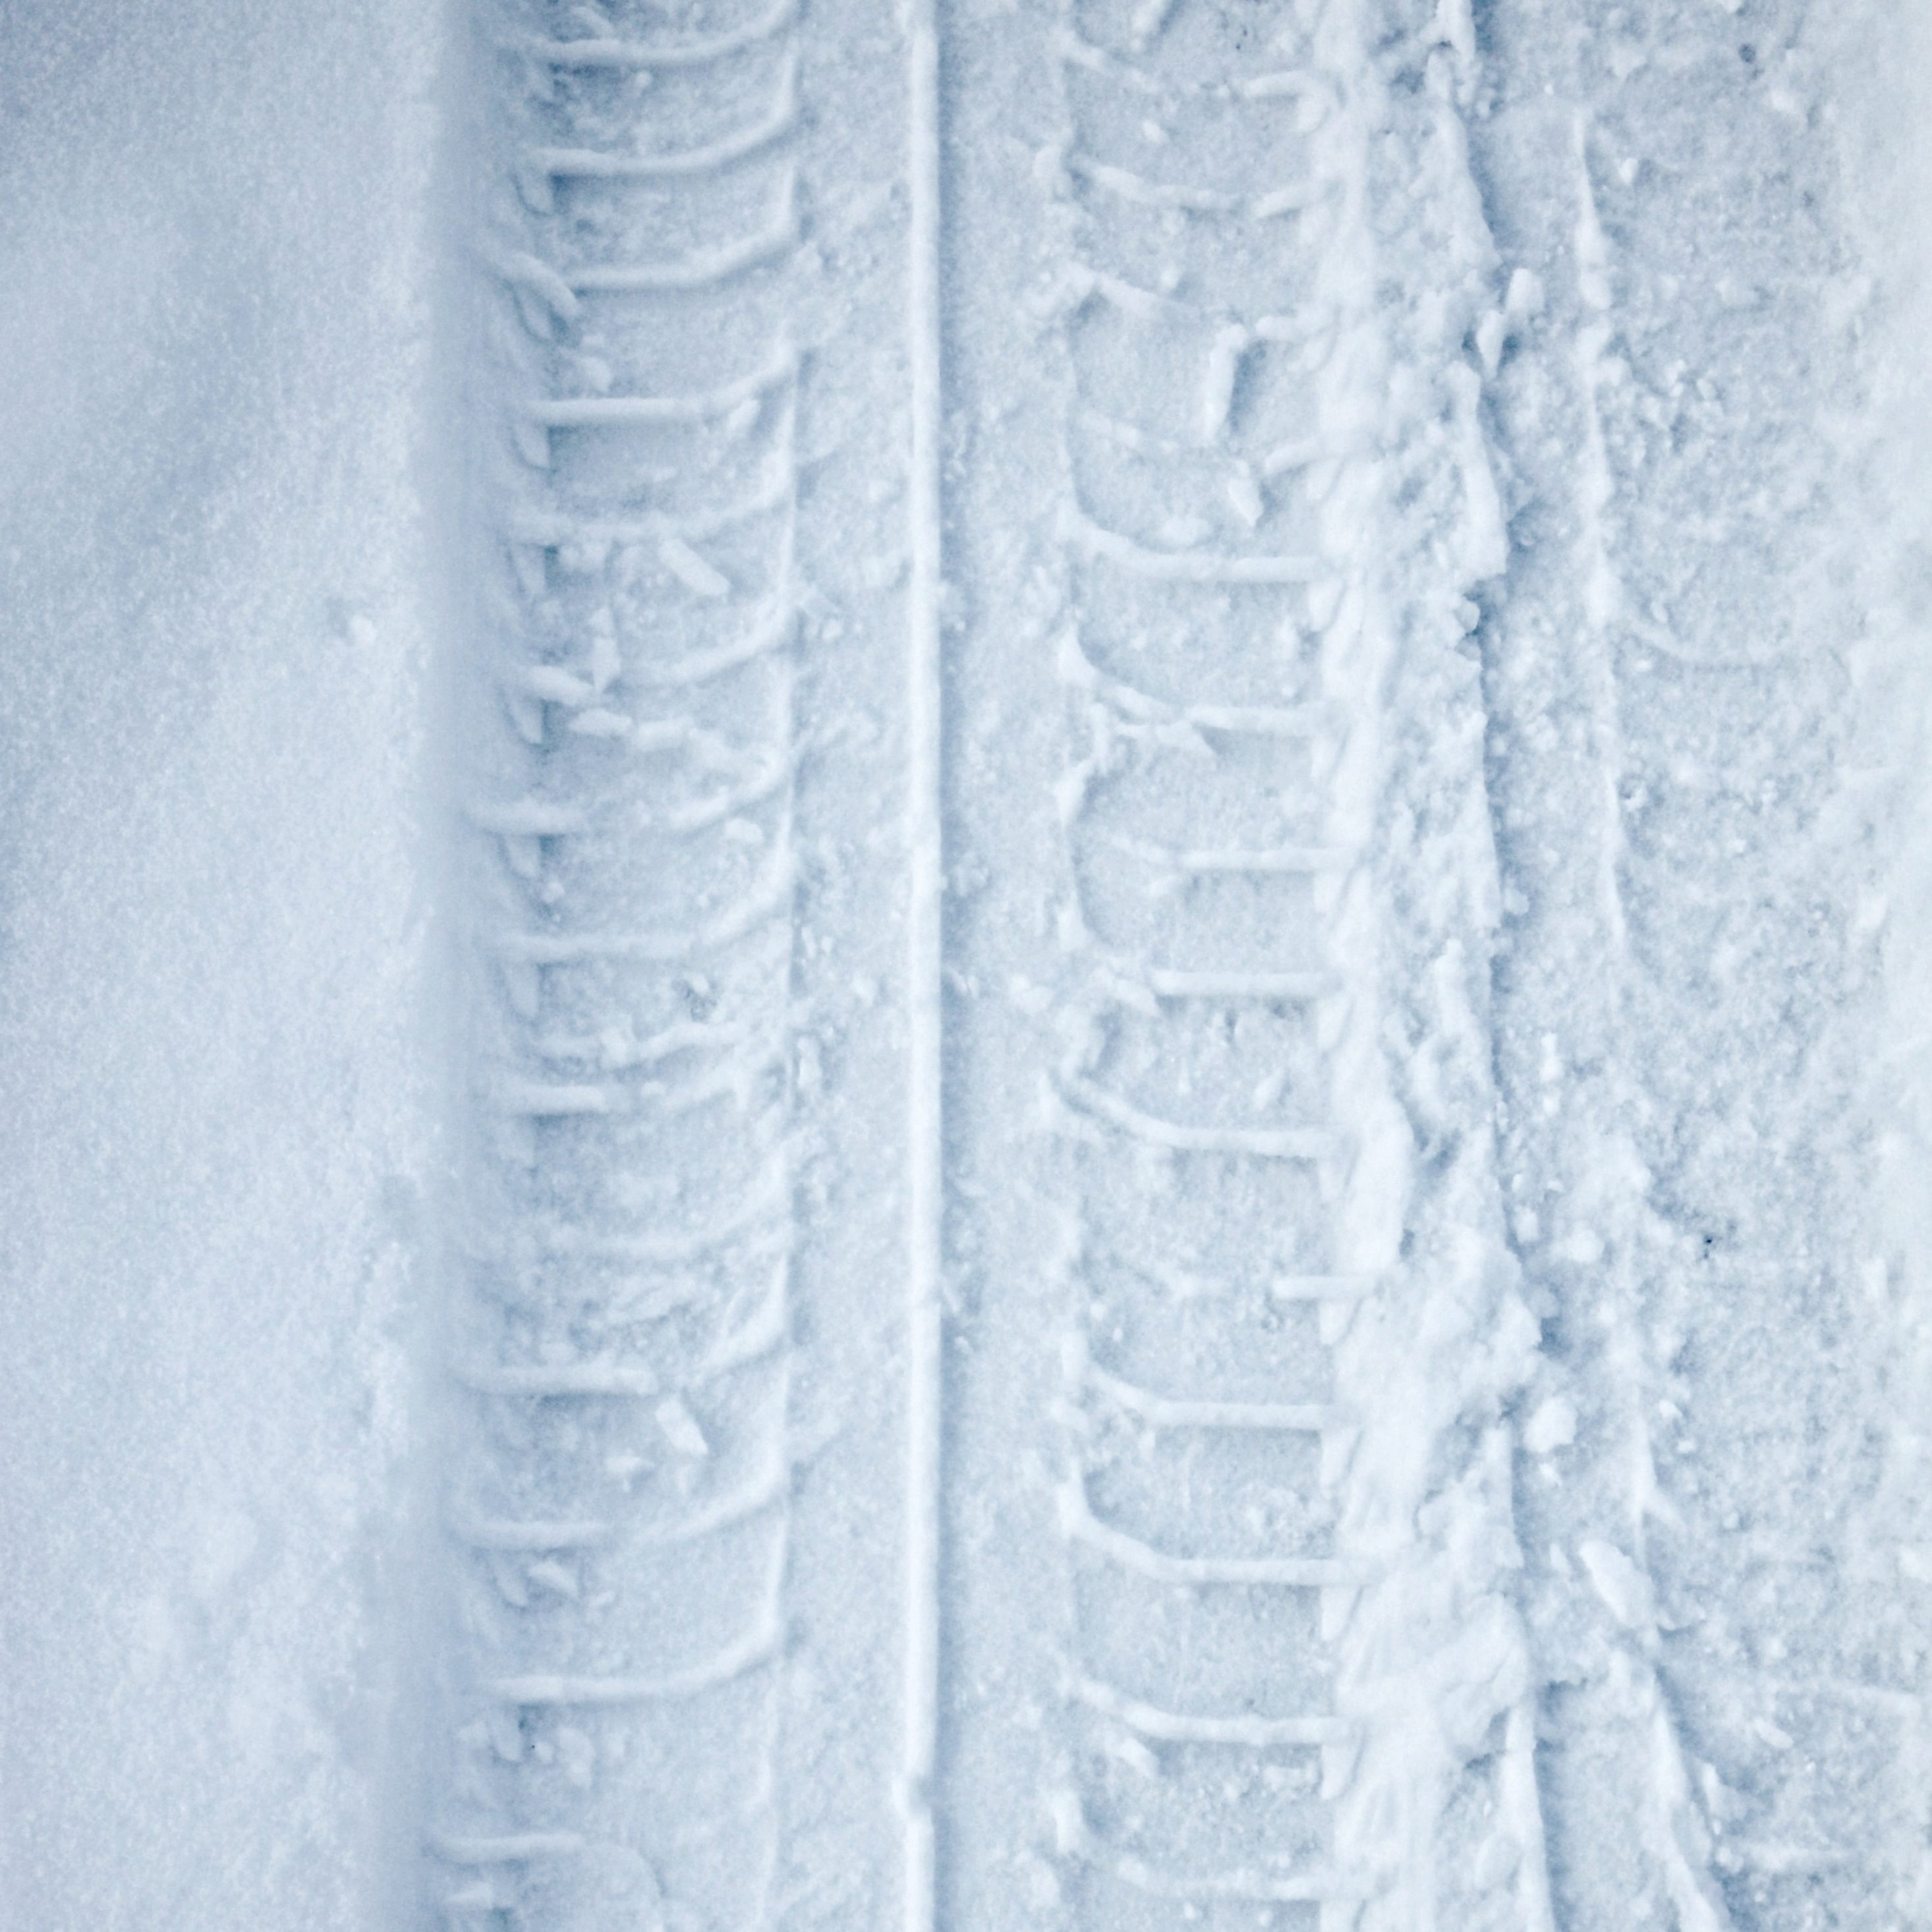 2932x2932 iPad Pro wallpaper 4k Tyre Track Snow Winter iPad Wallpaper 2932x2932 pixels resolution